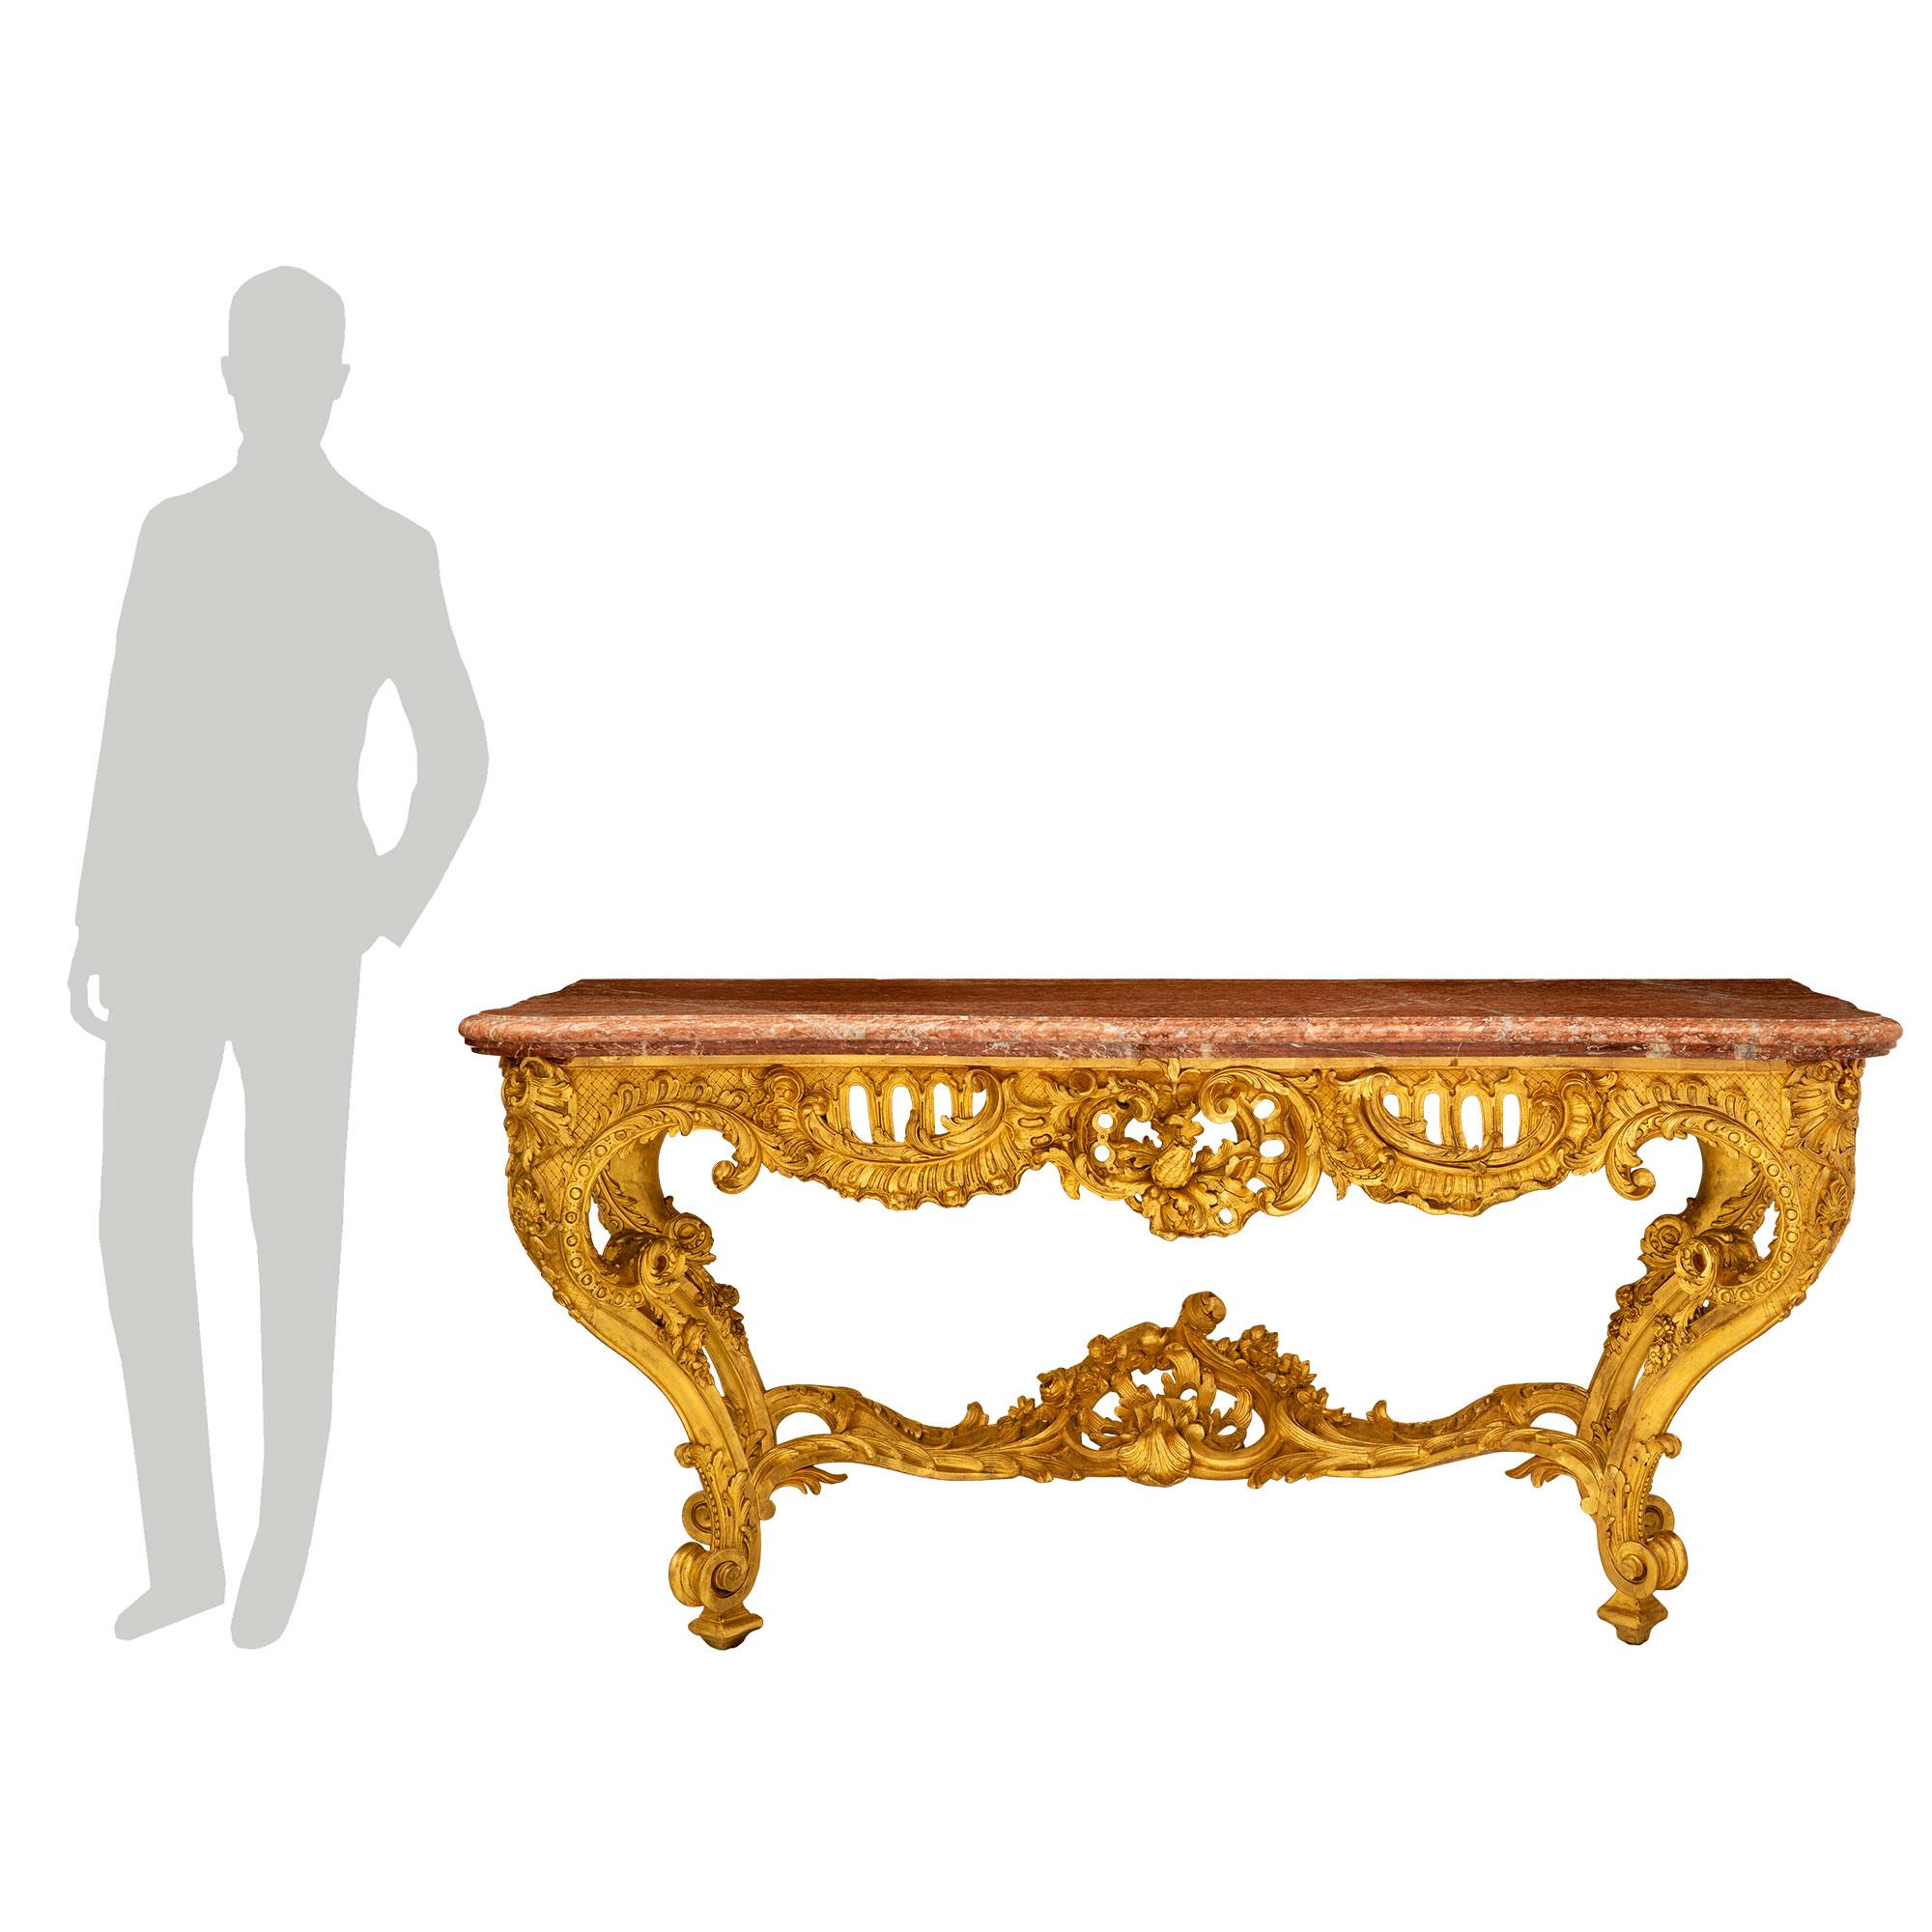 Une étonnante et très impressionnante console Louis XV du 19ème siècle en bois doré et marbre Rouge du Languedoc. La console autoportante est surélevée par de beaux pieds cabriole fuselés, avec de fins pieds carrés et de remarquables feuilles